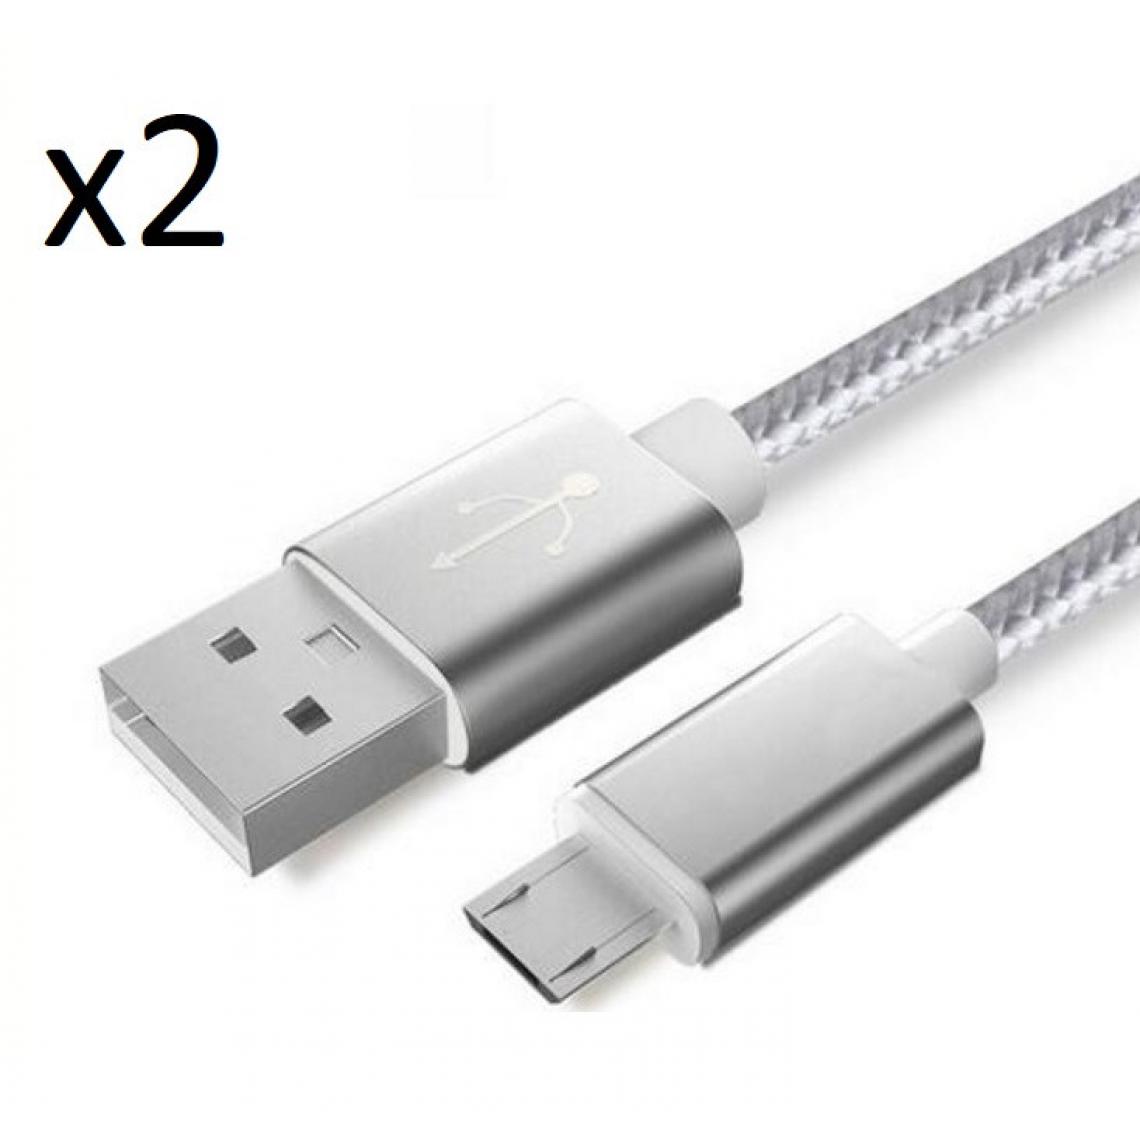 Shot - Pack de 2 Cables Metal Nylon Micro USB pour Ultimate Ears BLAST Smartphone Android Chargeur (ARGENT) - Chargeur secteur téléphone